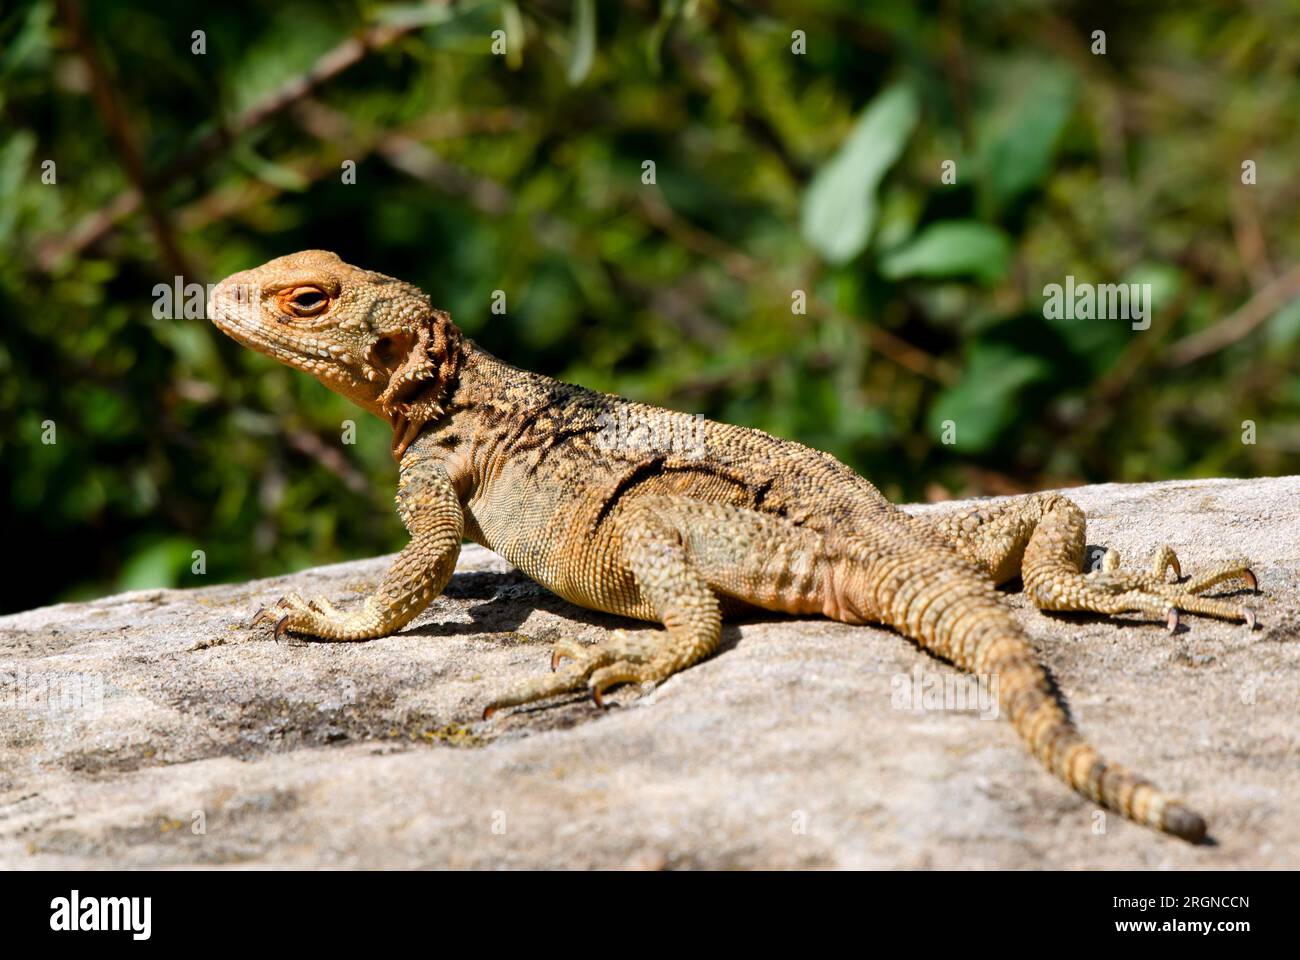 The Caucasian agama (Paralaudakia caucasia) is a species of agamid lizard found in Caucasus. Stock Photo